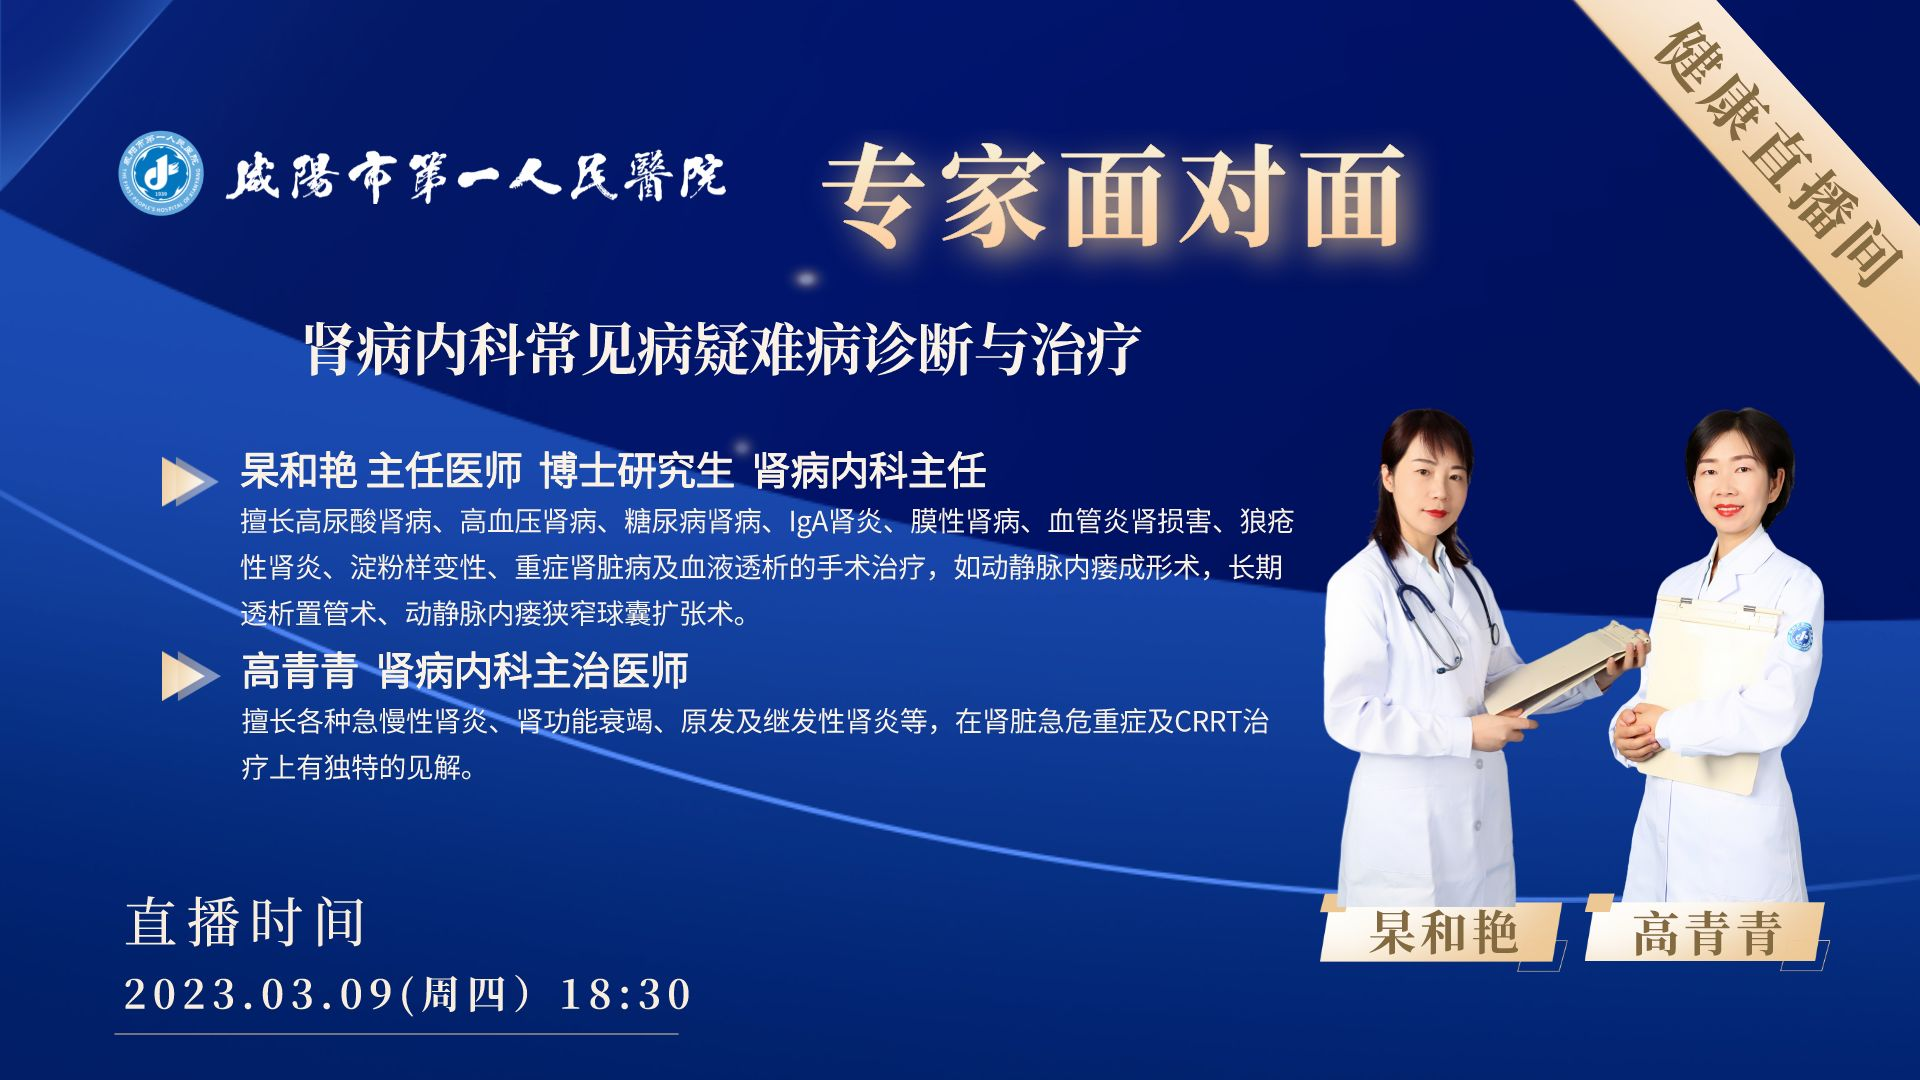 【直播回看】咸阳市第一人民医院专家面对面肾病内科常见病疑难病诊断与治疗